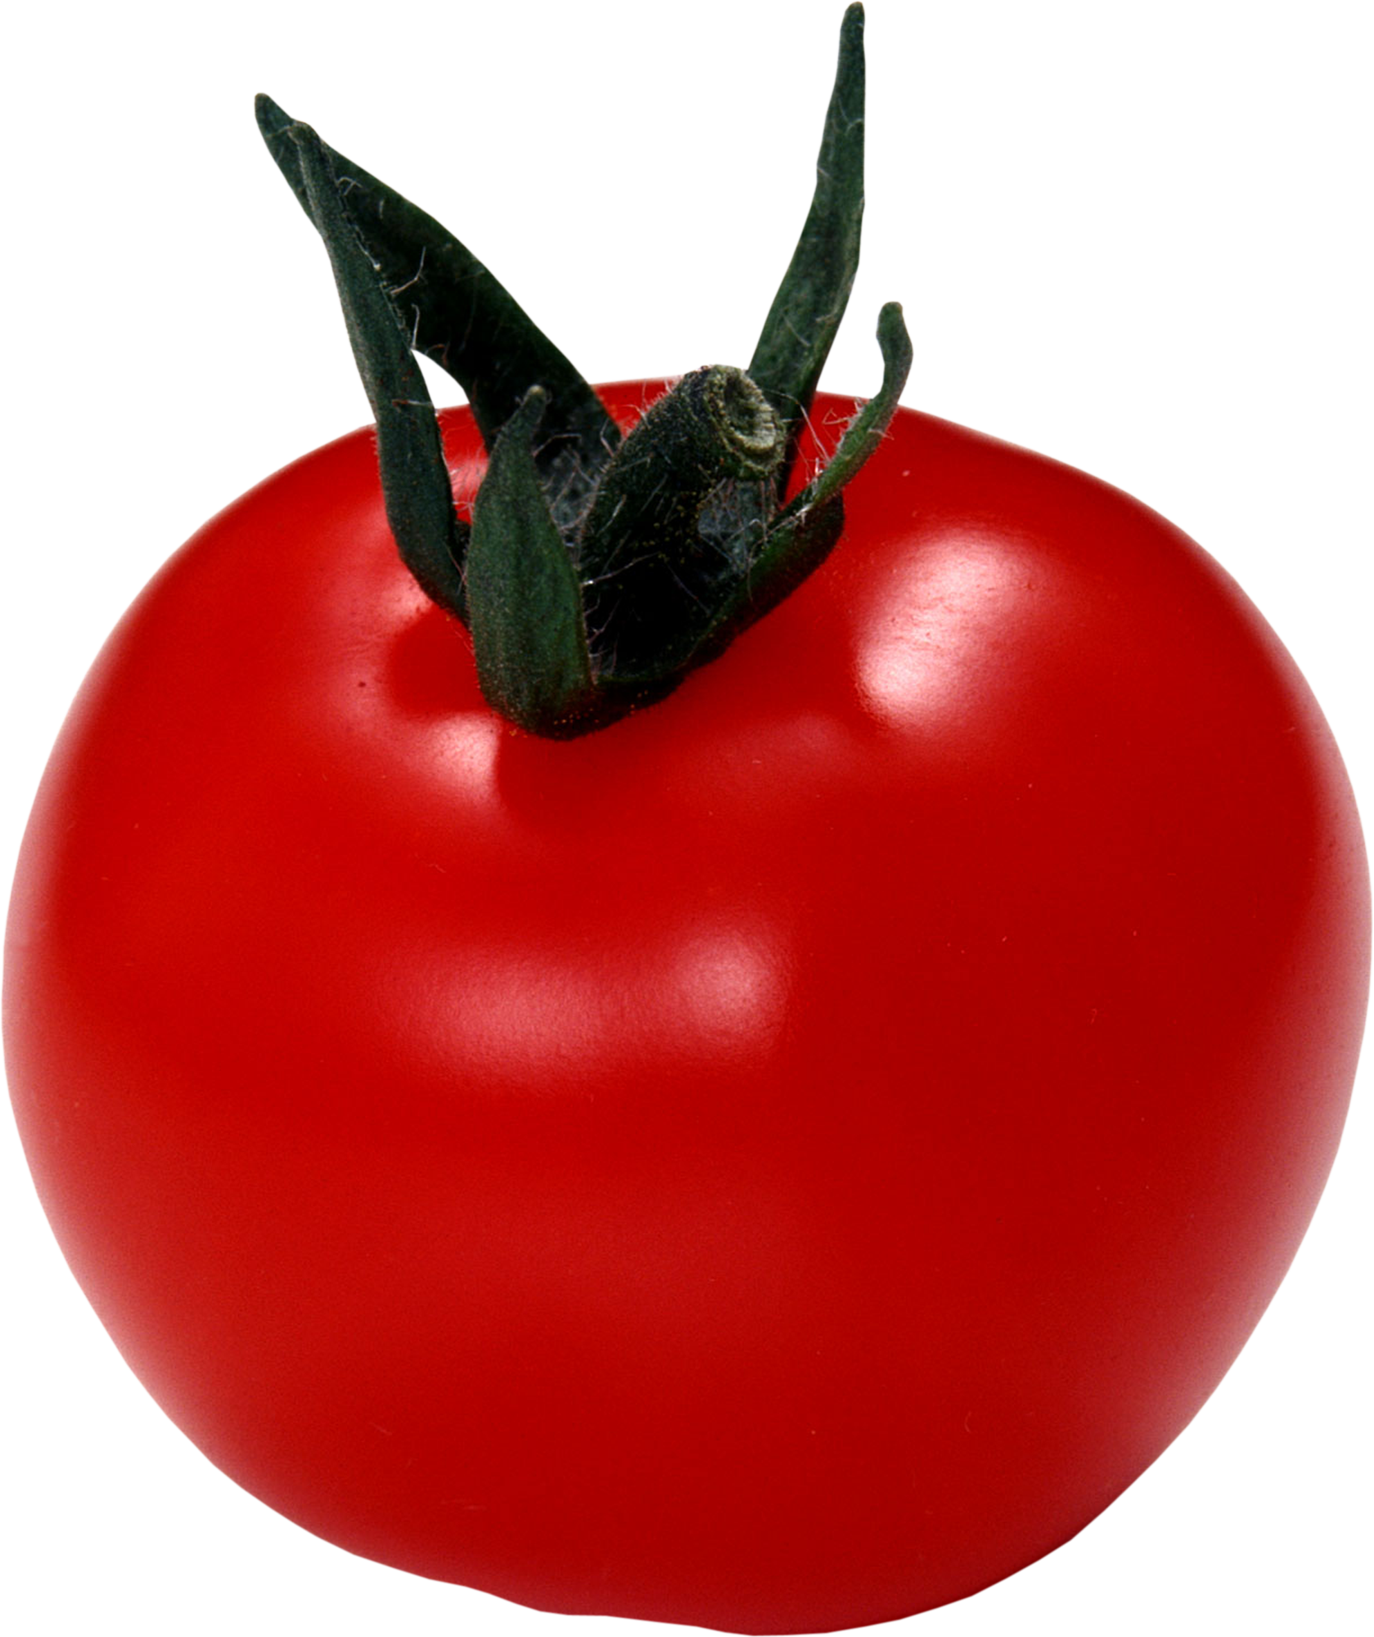 Tomat merah besar